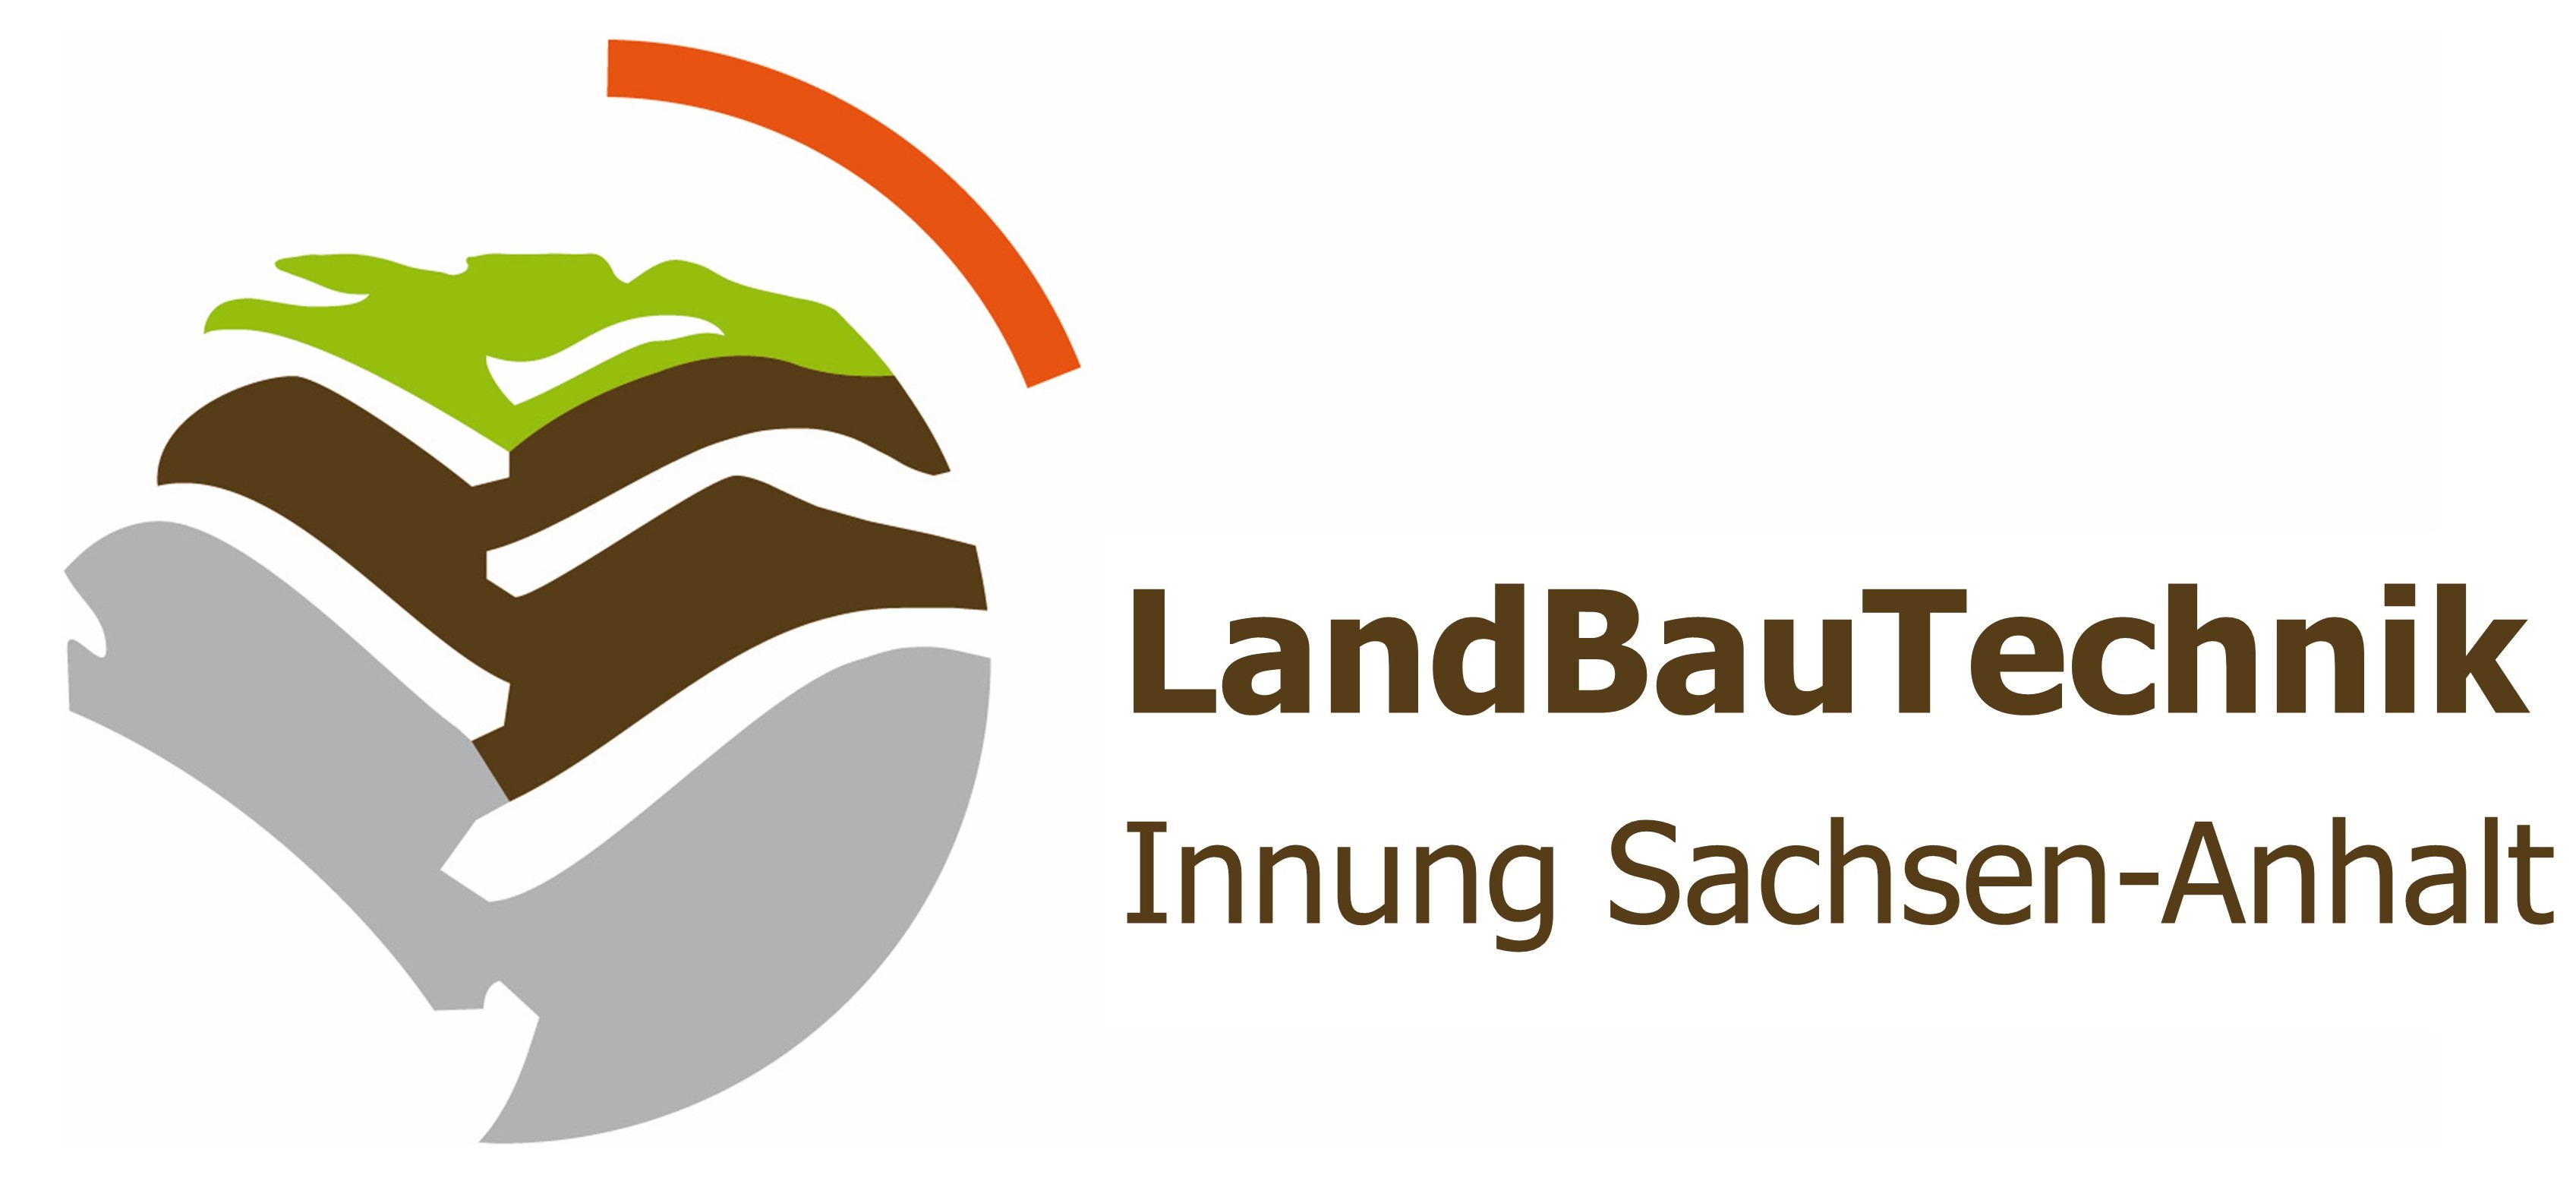 Innung LandBauTechnik Sachsen-Anhalt